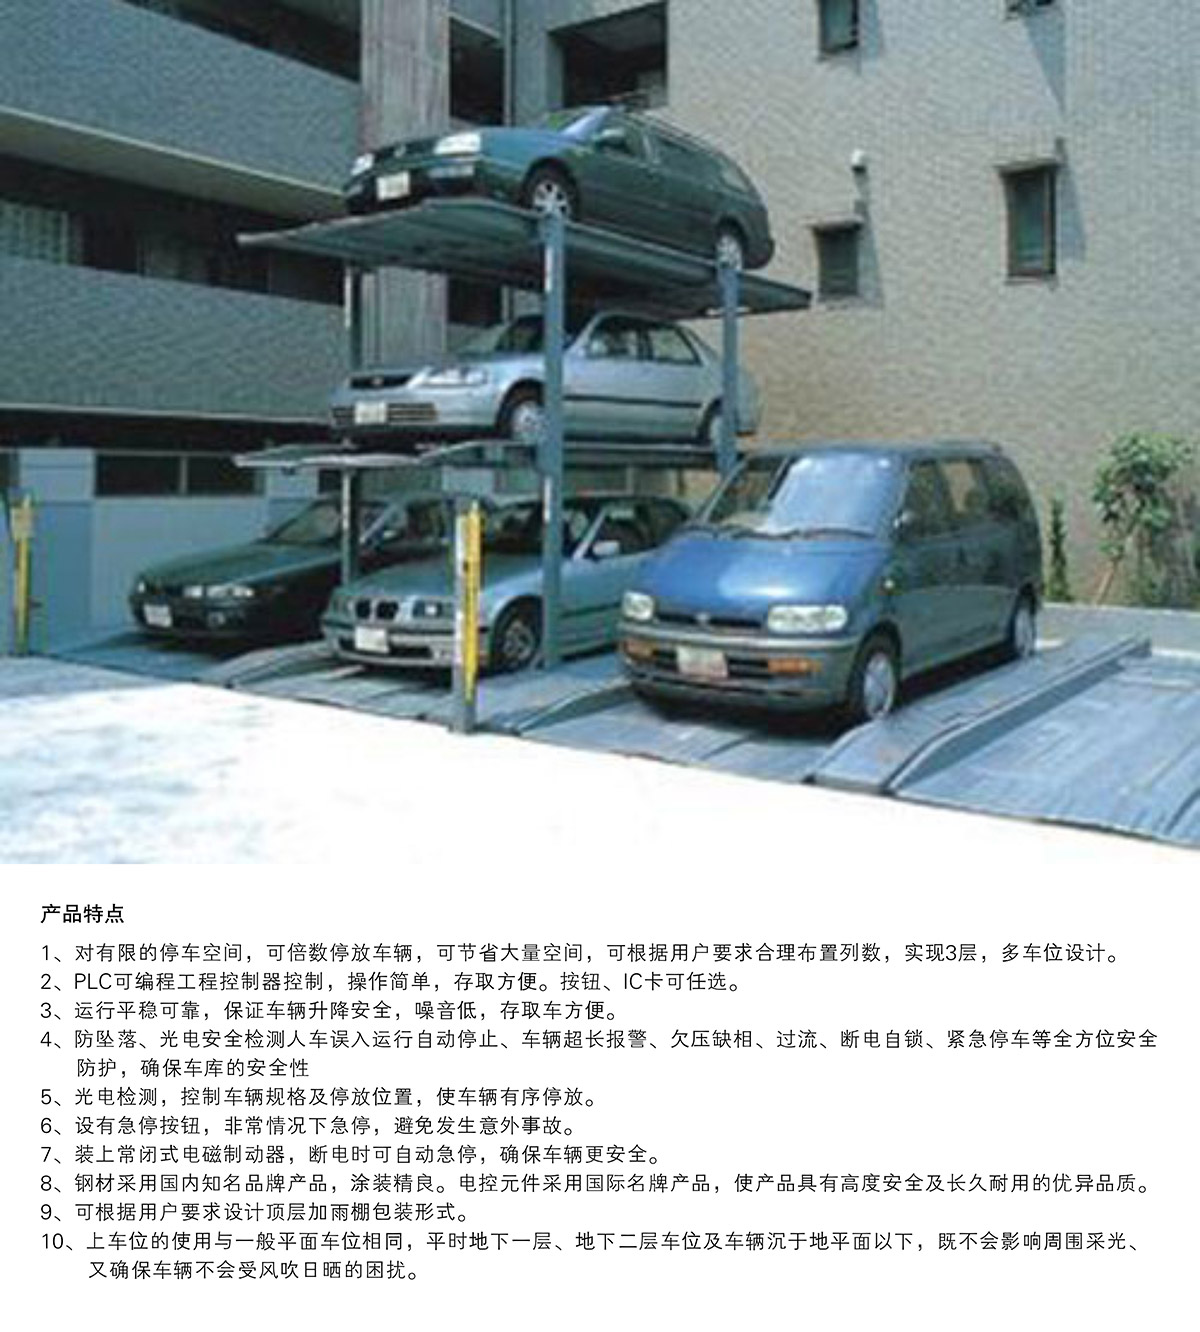 立体停车PJS3D2三层地坑简易升降停车设备产品特点.jpg